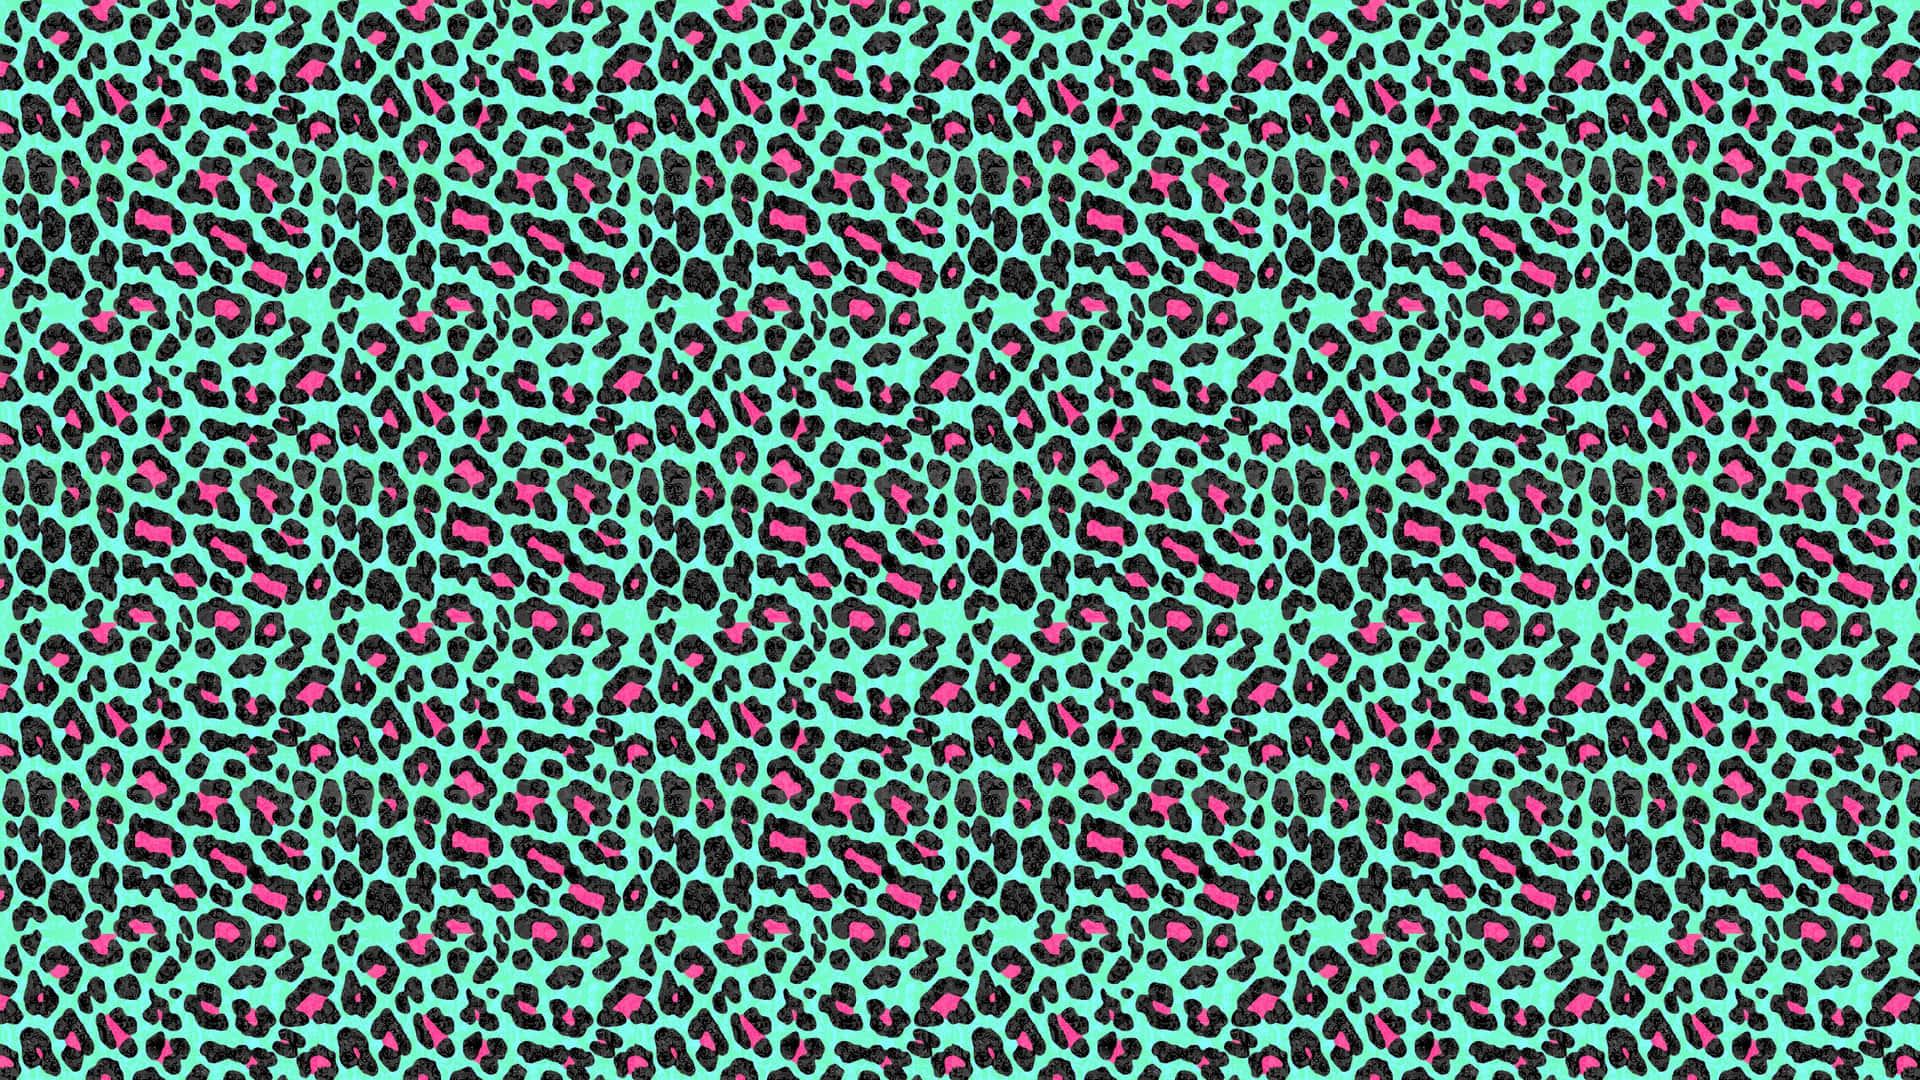 Etgrønt Og Pink Leopard-print Mønster.